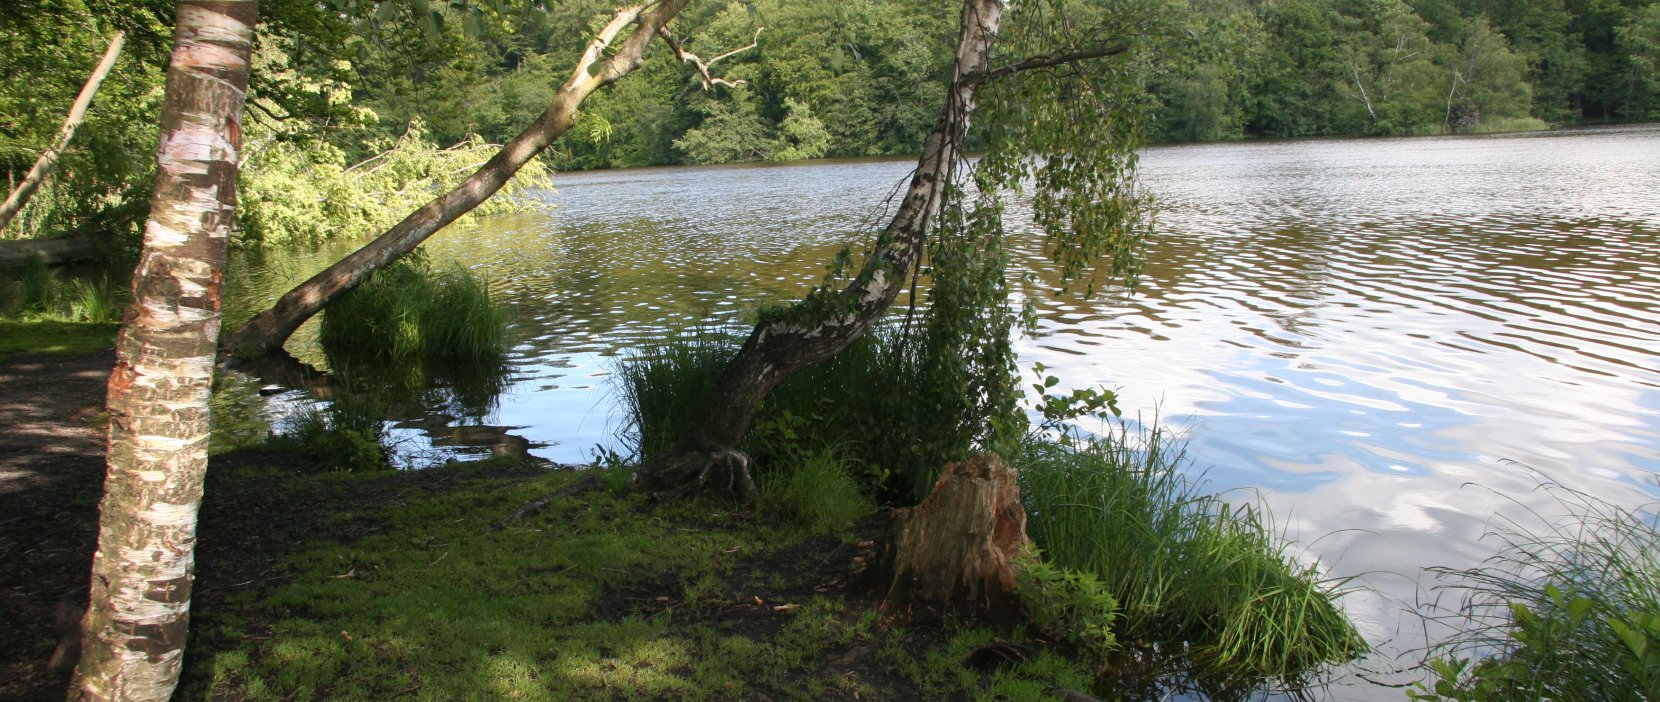 Løje sø i Rude skov